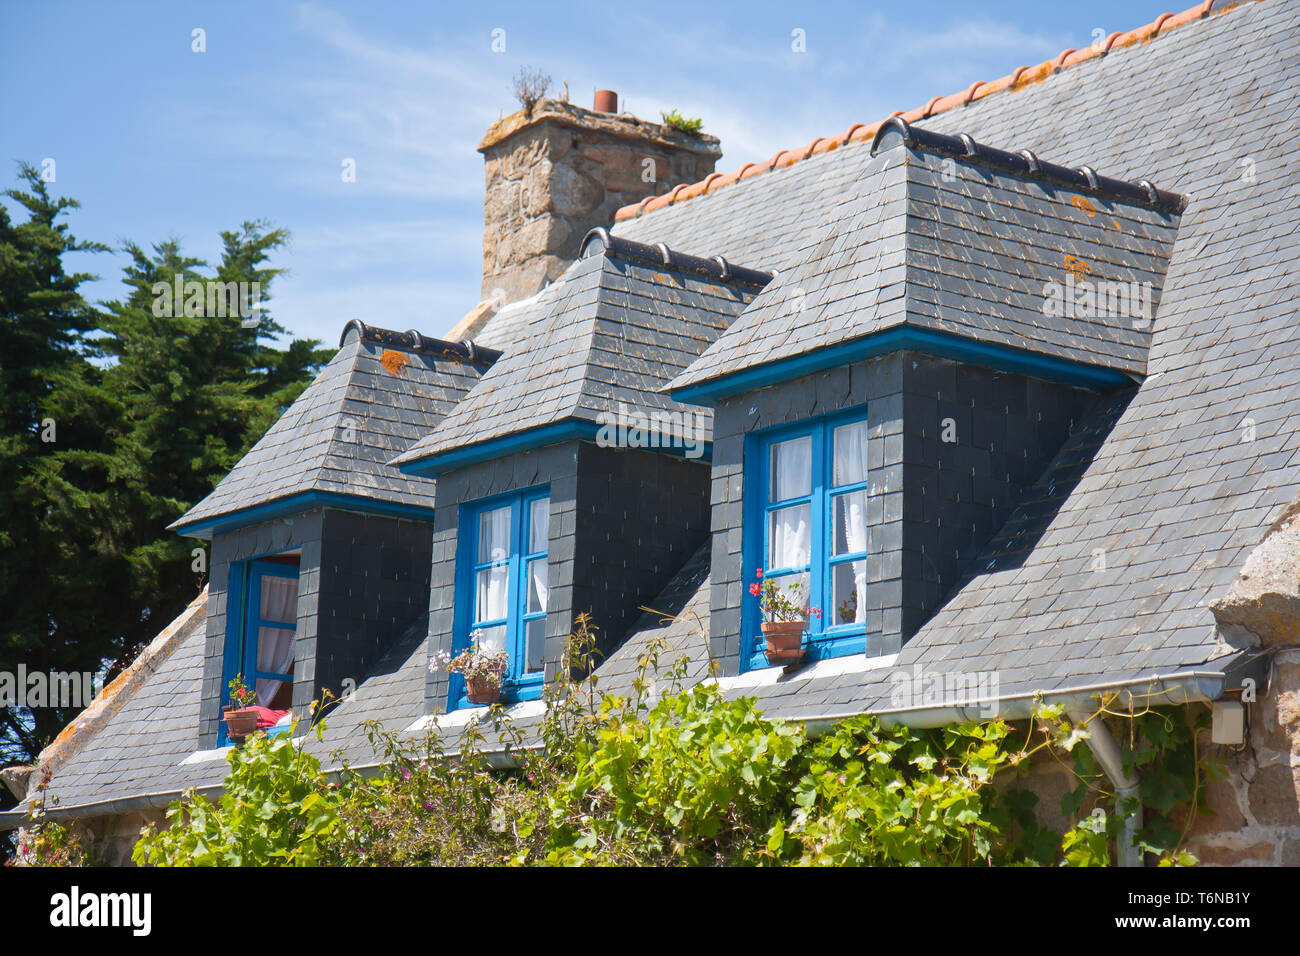 Maison bretonne typique avec lucarnes et fenêtres, France Banque D'Images